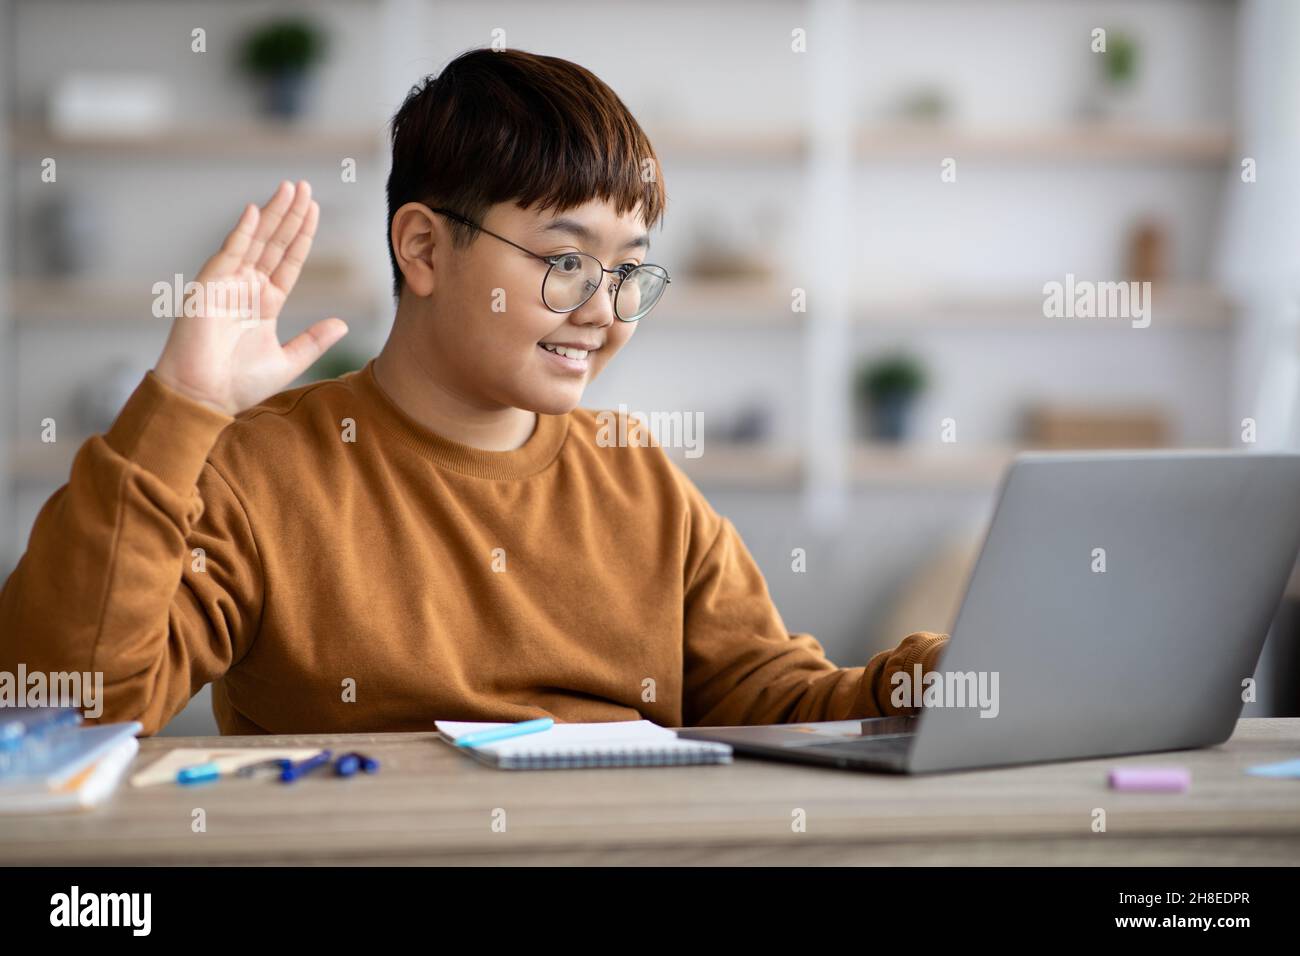 Sorridente ragazzo chubby coreano che agita sullo schermo del computer portatile Foto Stock